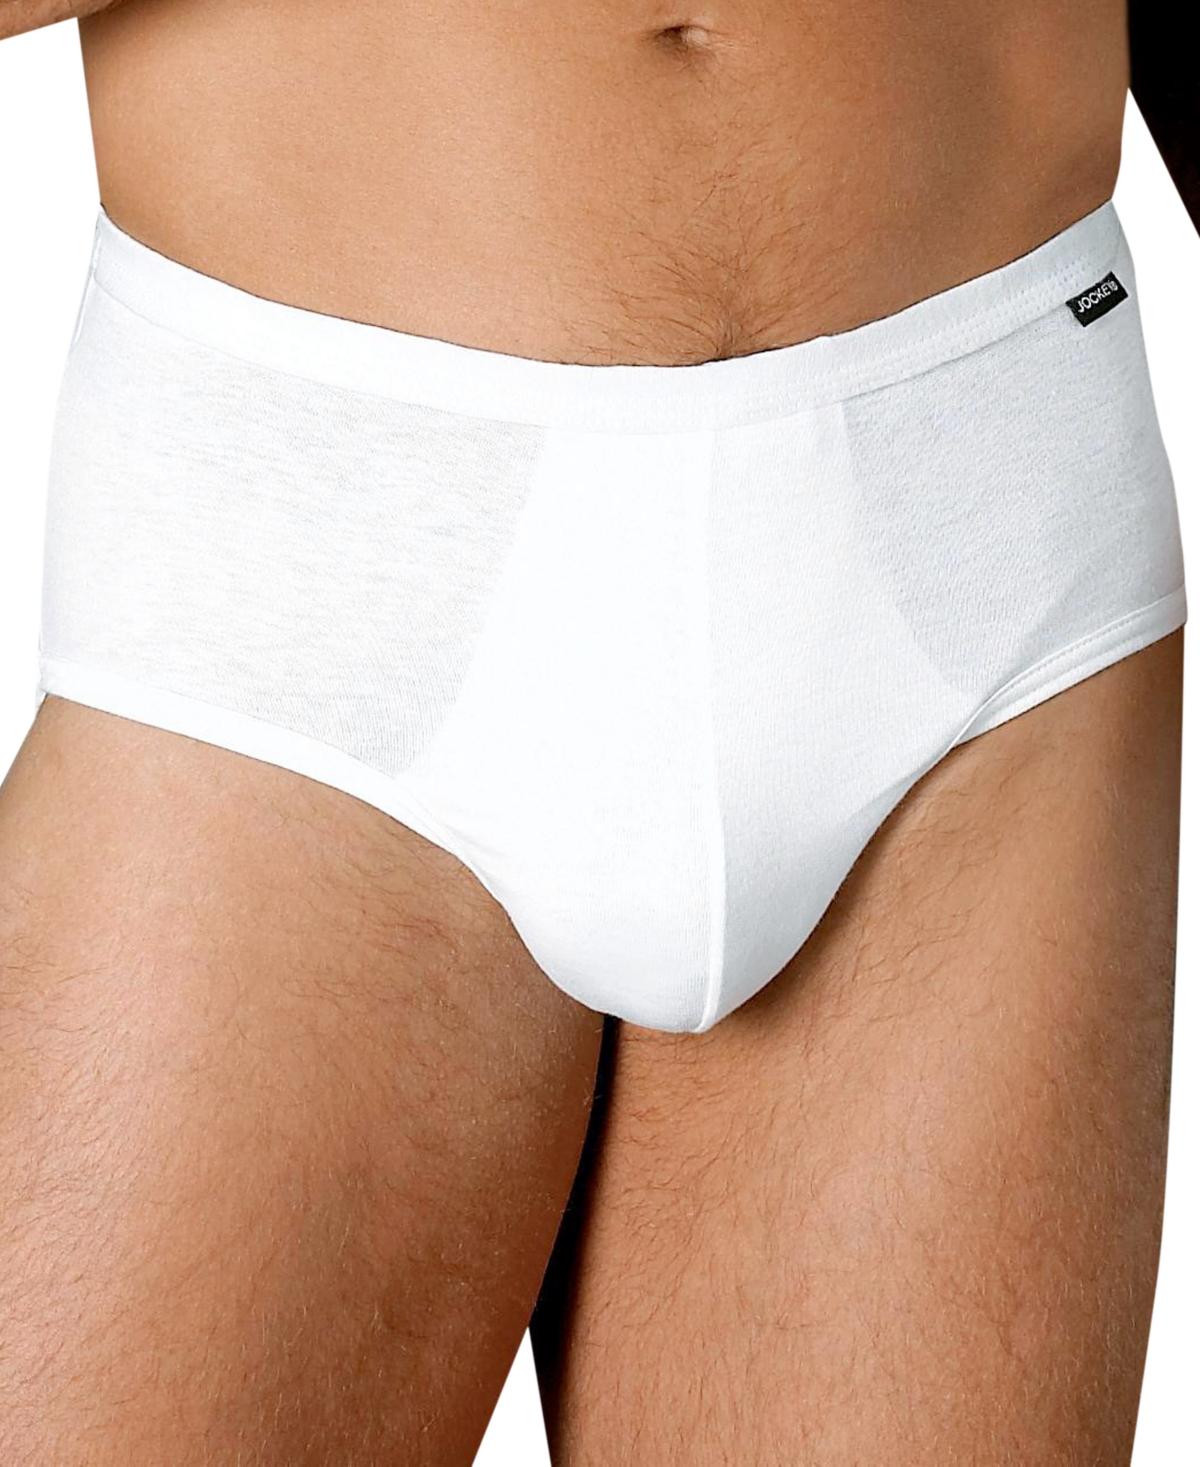 Men's Underwear, Elance Poco Brief 2 Pack - White